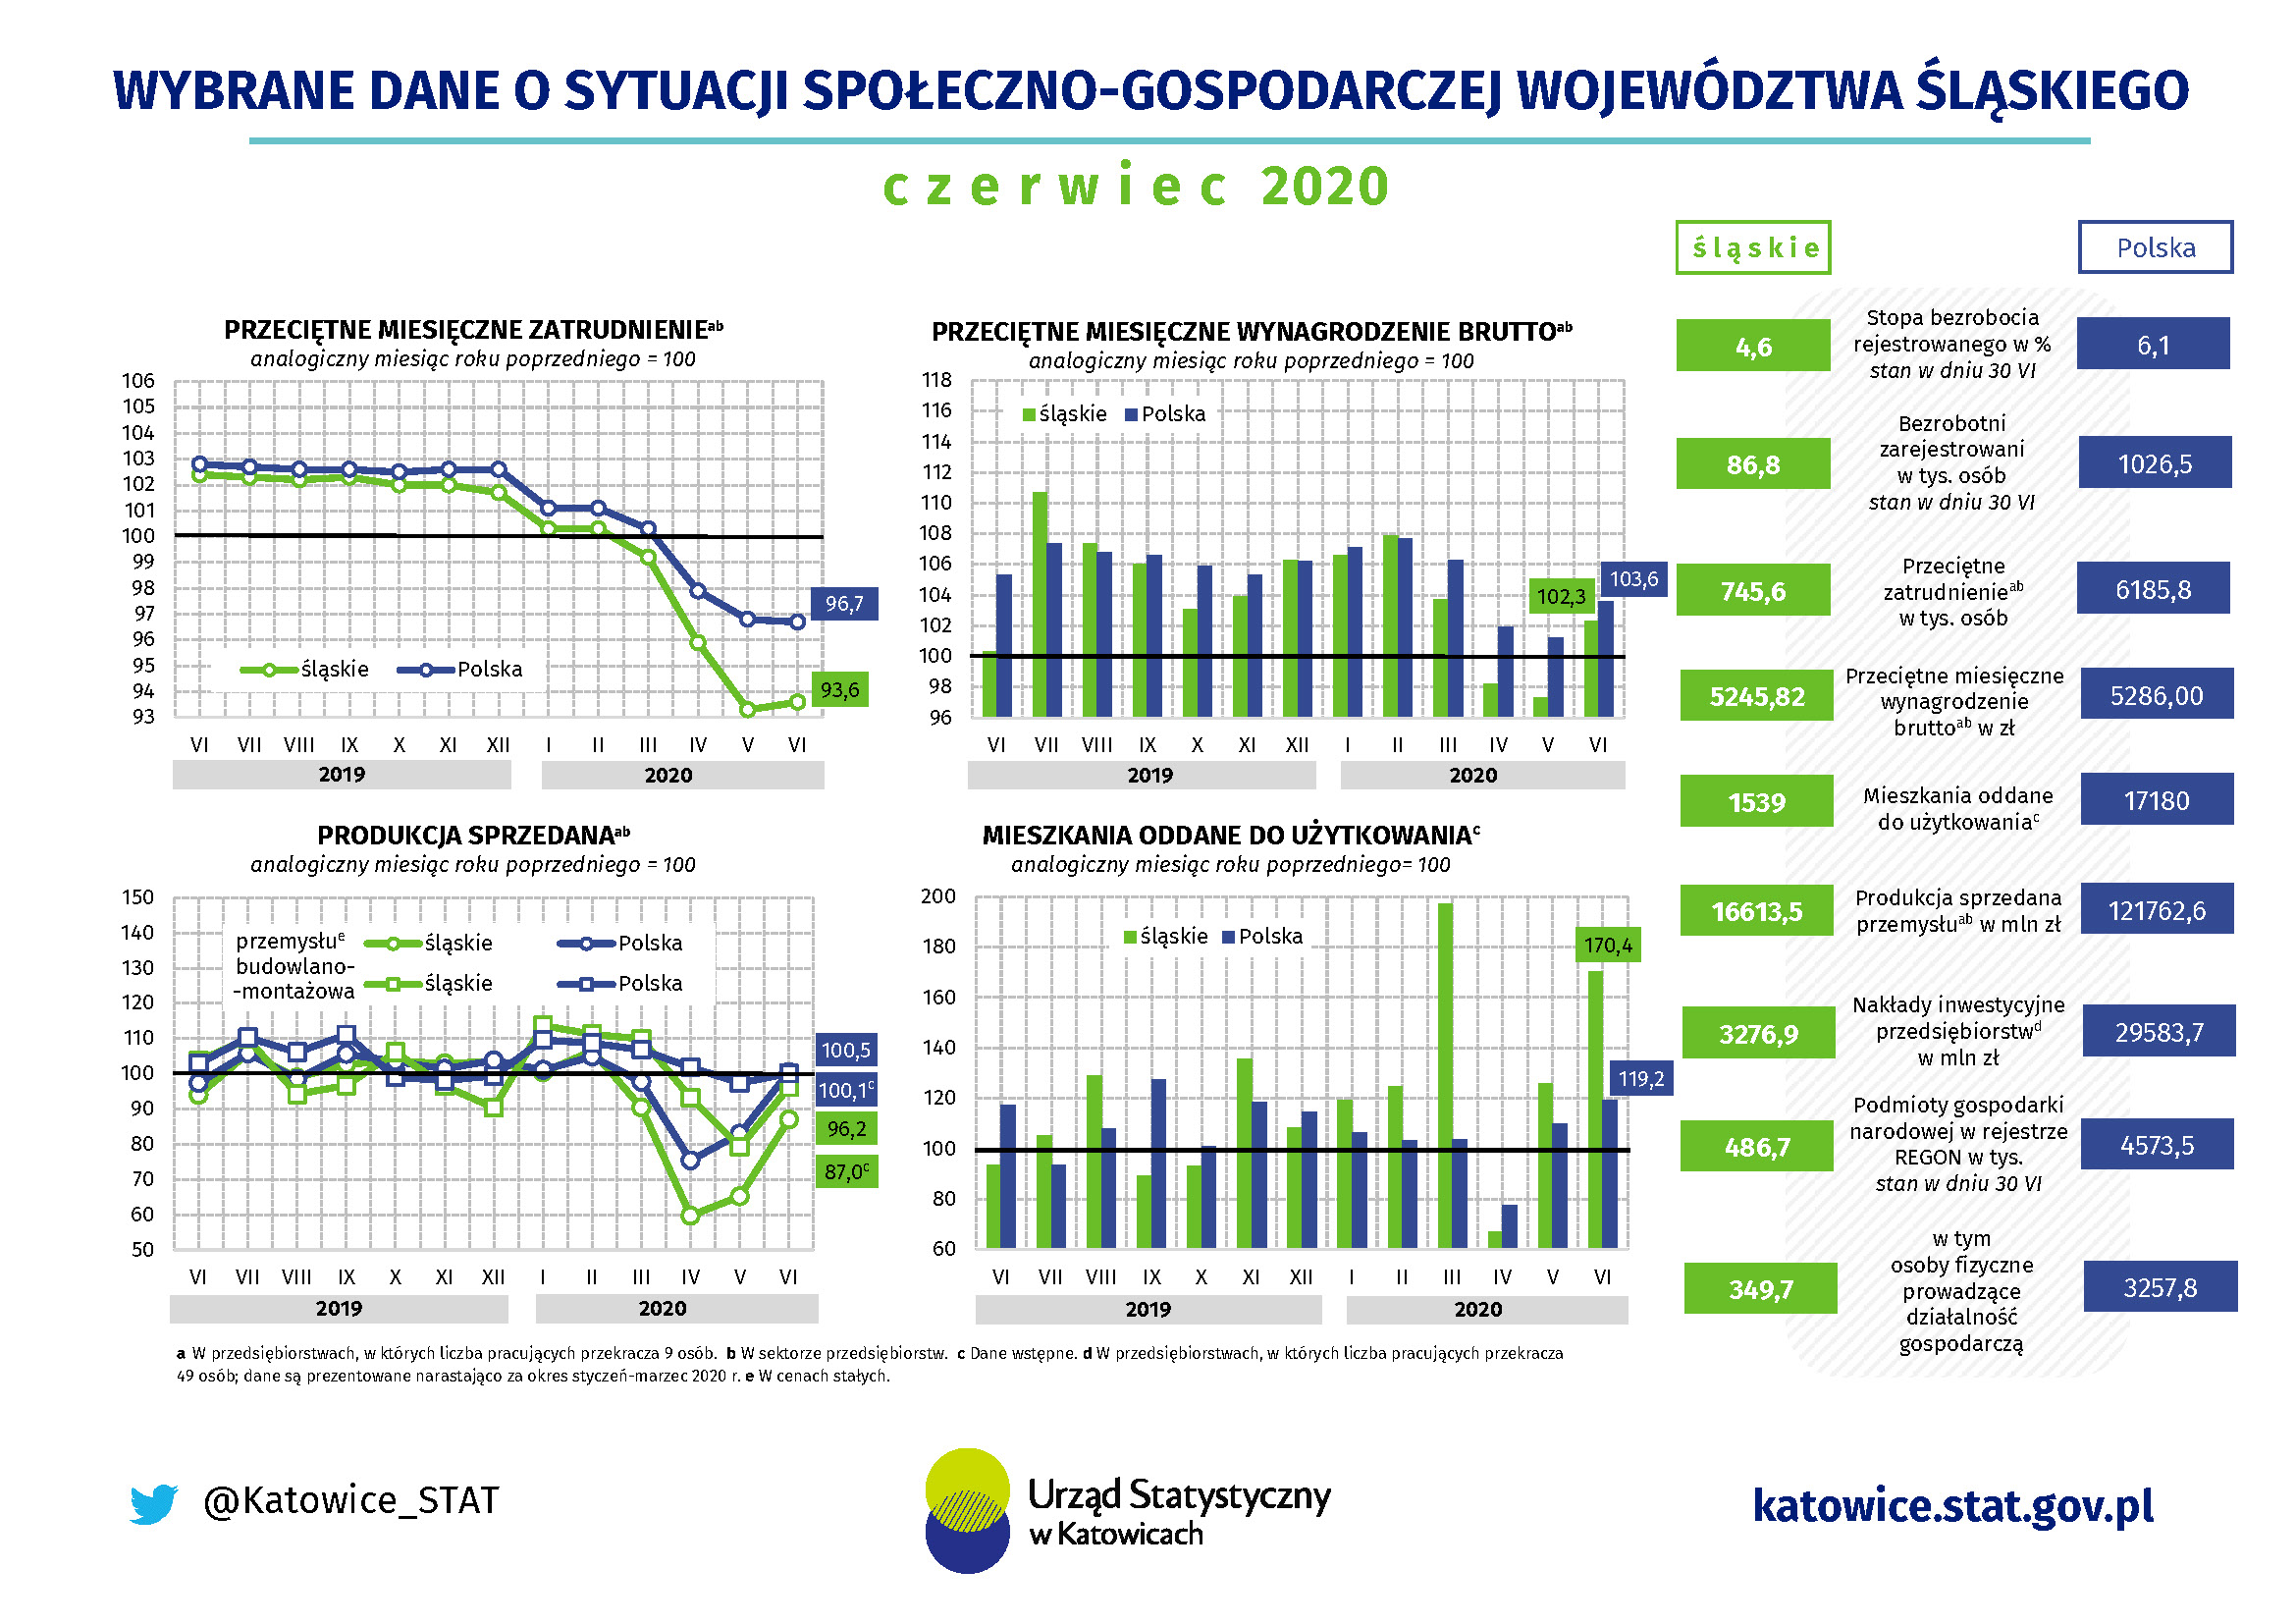 Infografika - Wybrane dane o sytuacji społeczno-gospodarczej województwa śląskiego w czerwcu 2020 r.